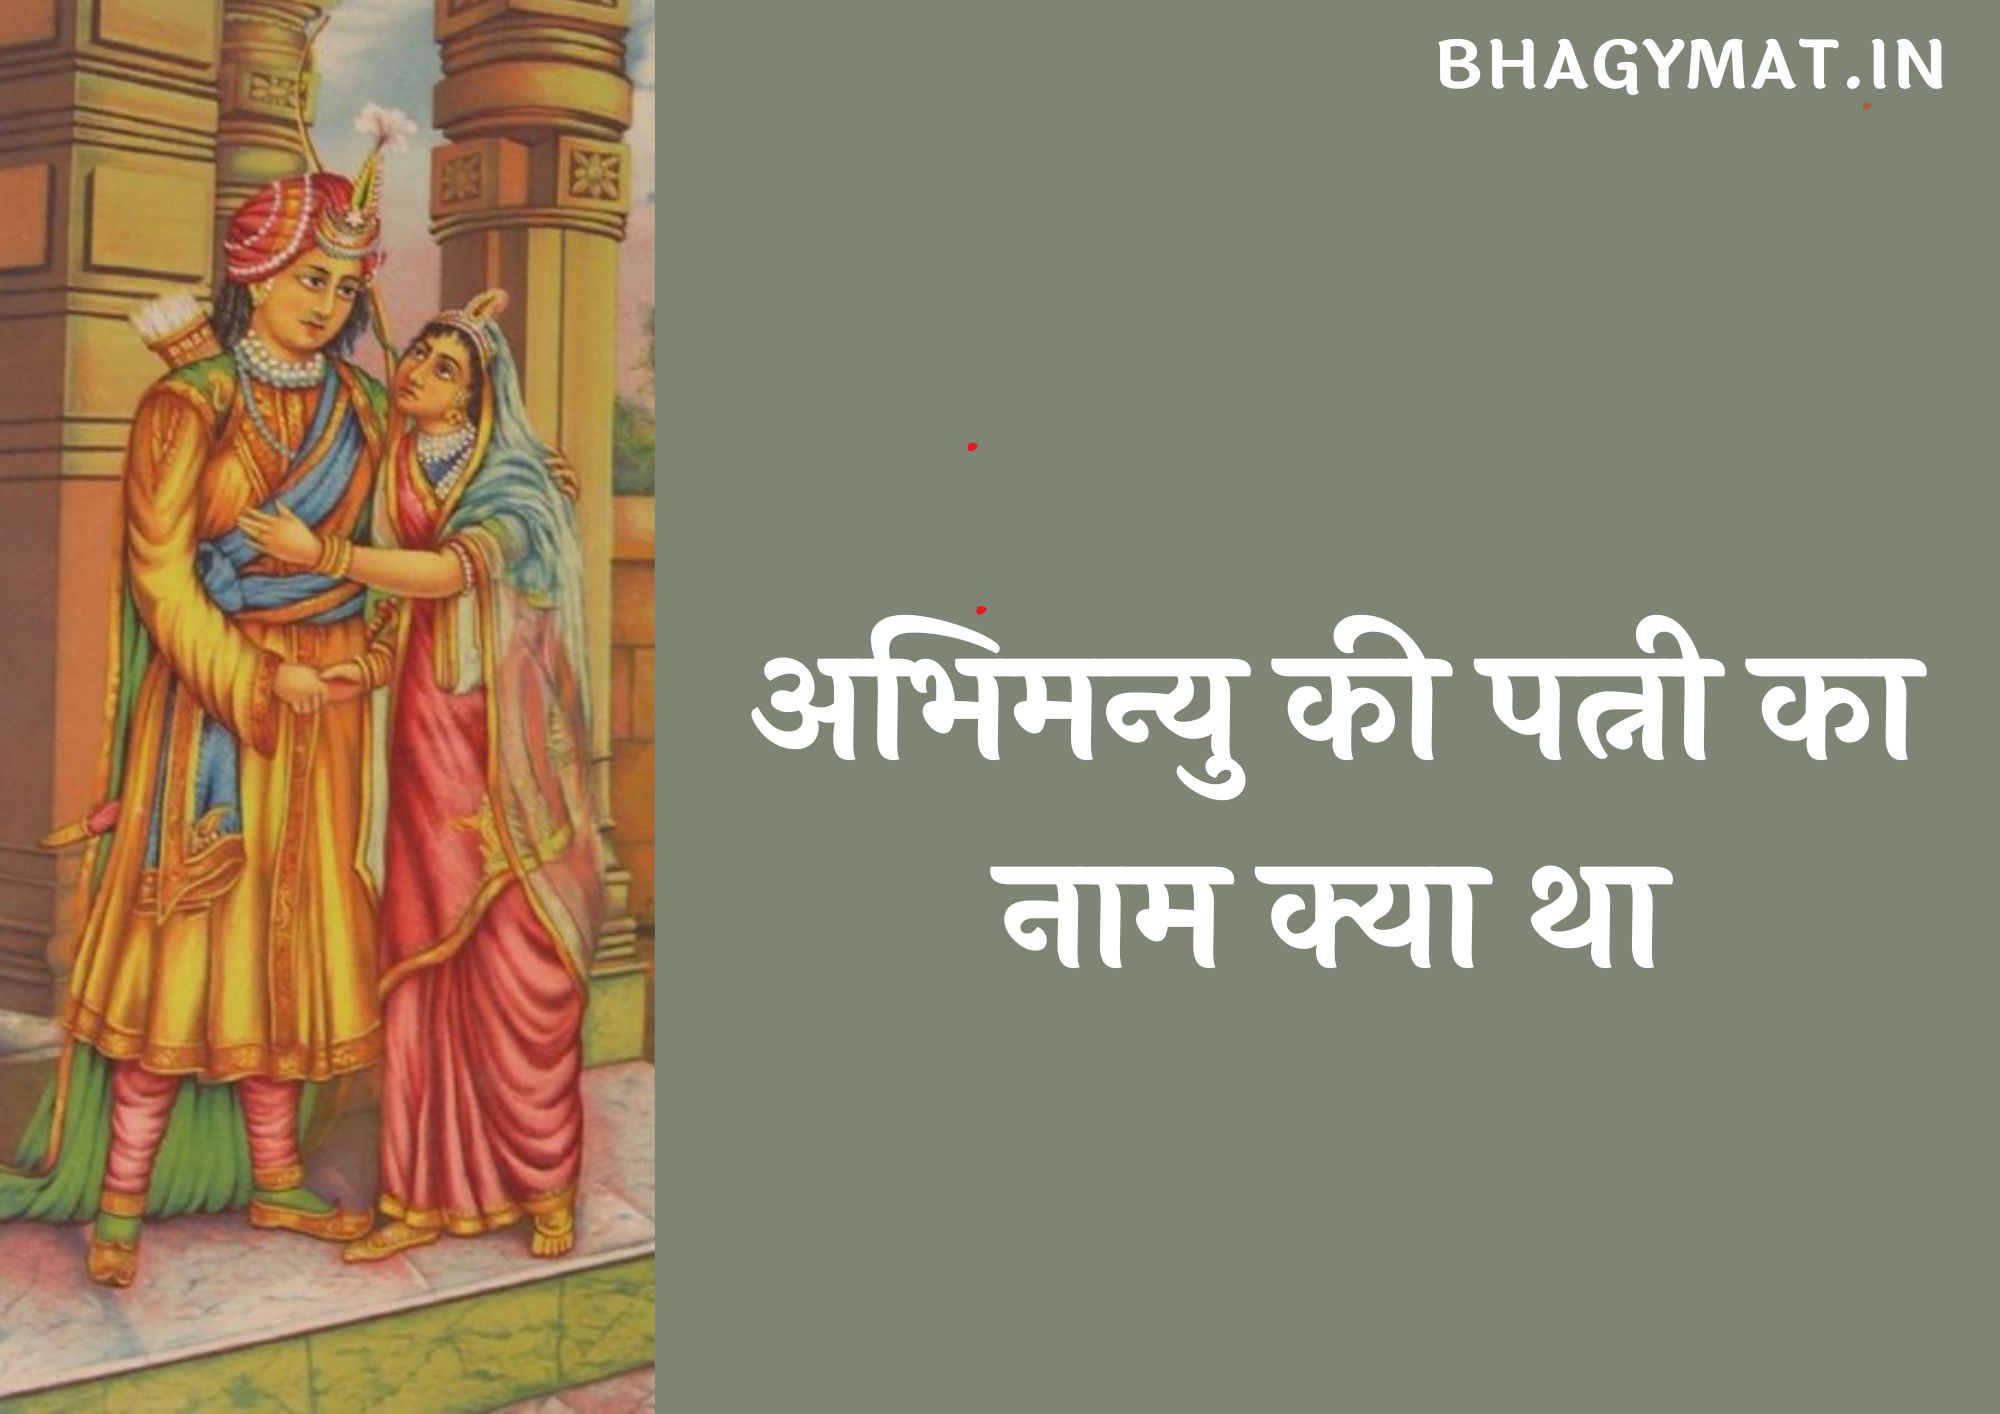 अभिमन्यु की पत्नी का नाम क्या था, अभिमन्यु की कितनी पत्नियां थी (Abhimanyu Ki Patni Ka Naam Kya Tha)